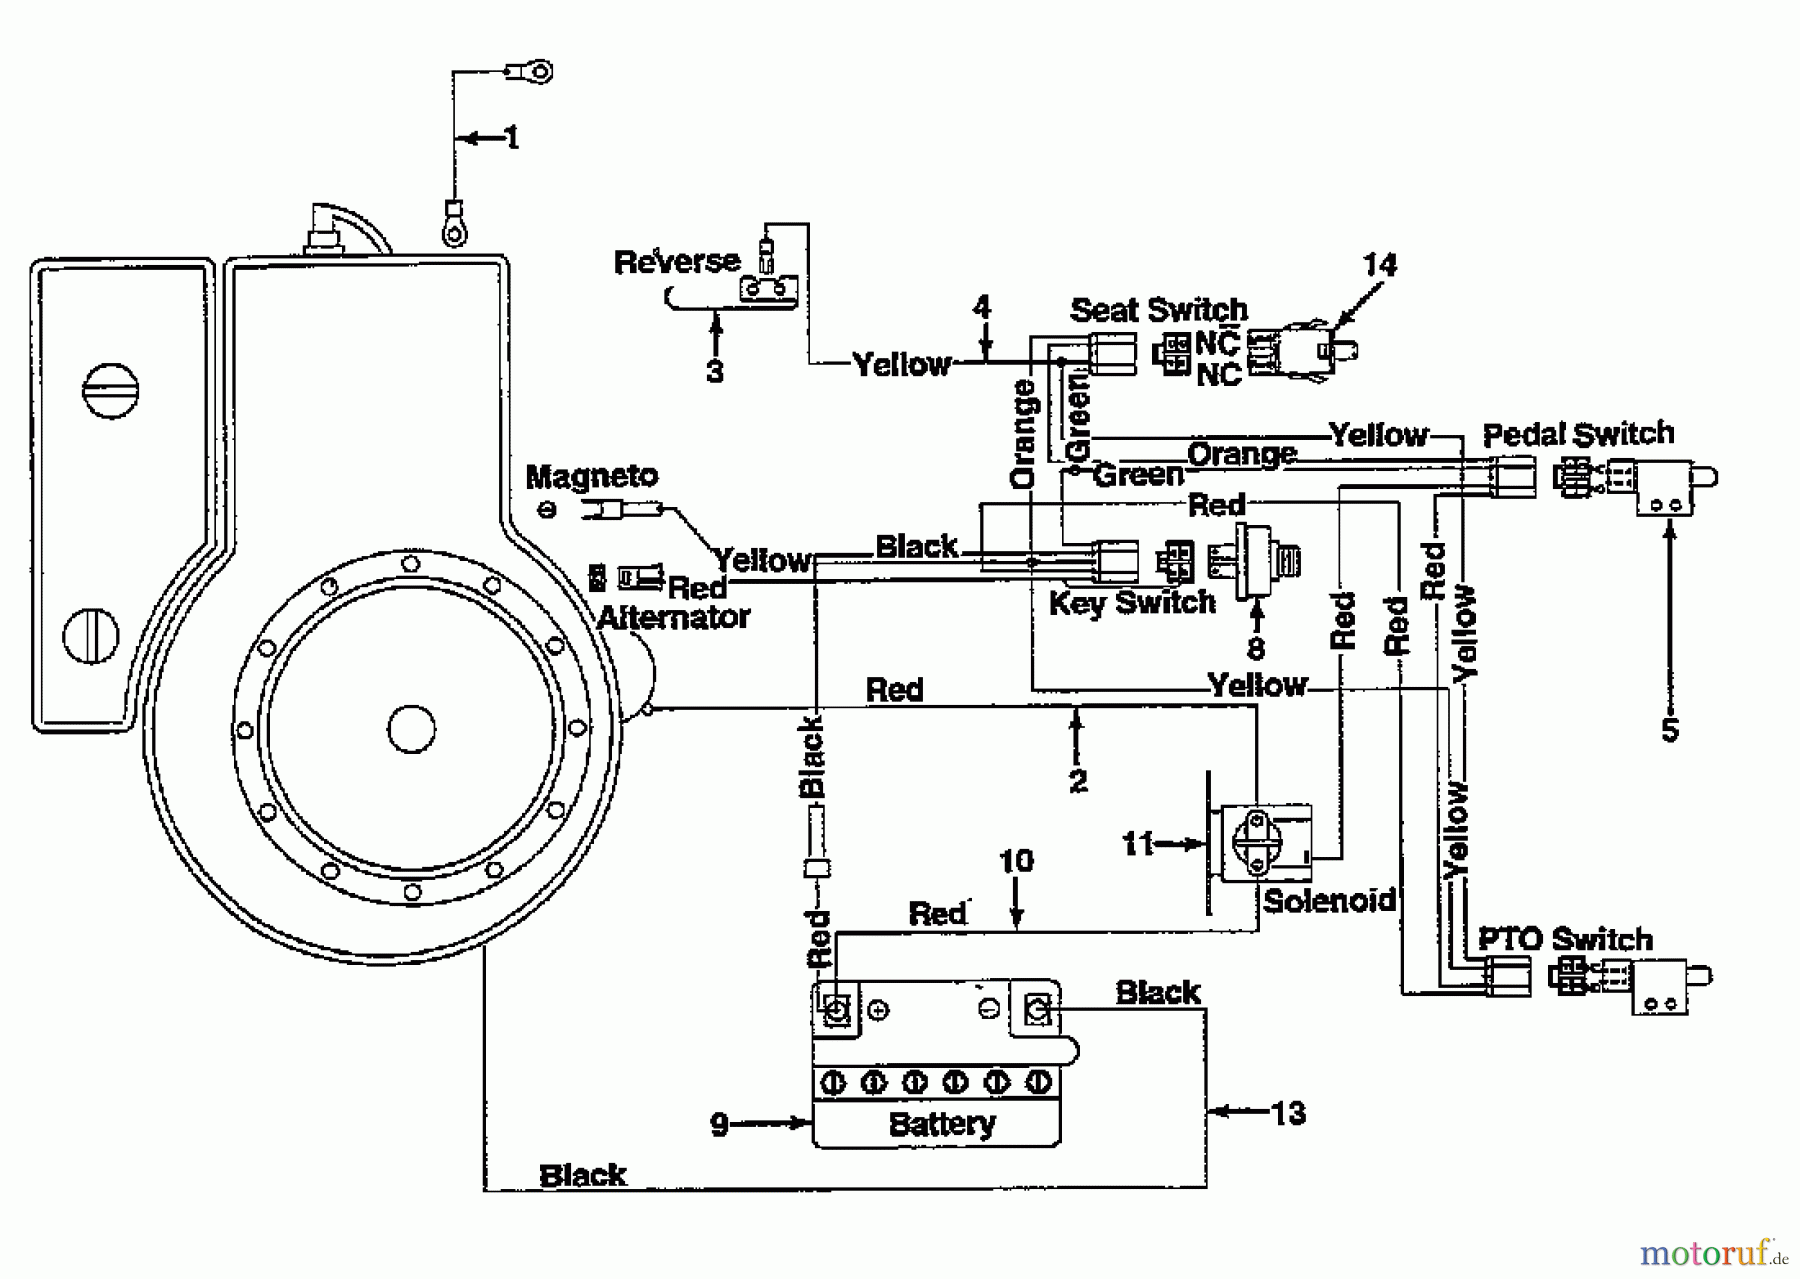  Gardol Lawn tractors R 10 132-521C646  (1992) Wiring diagram